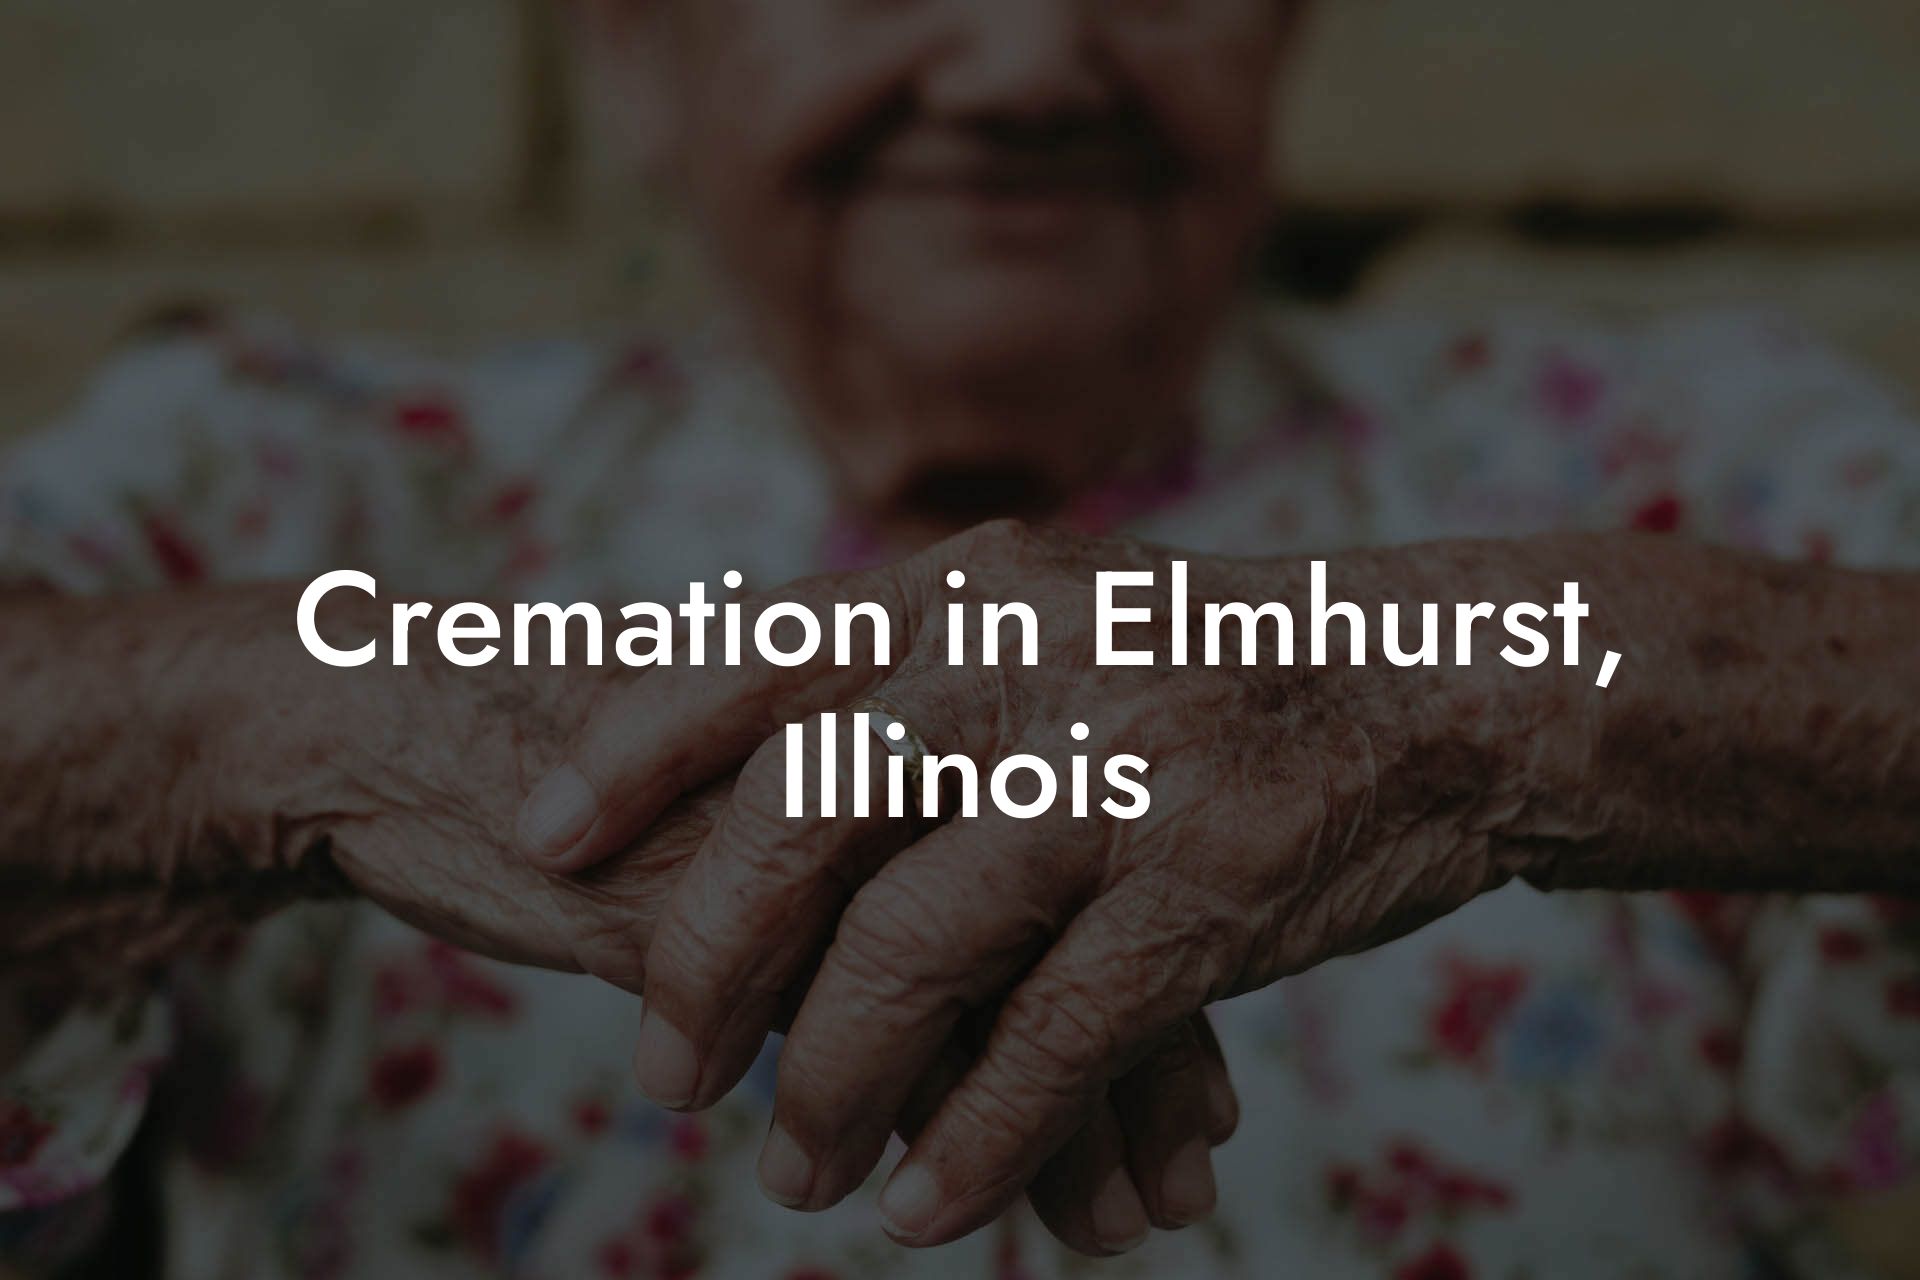 Cremation in Elmhurst, Illinois